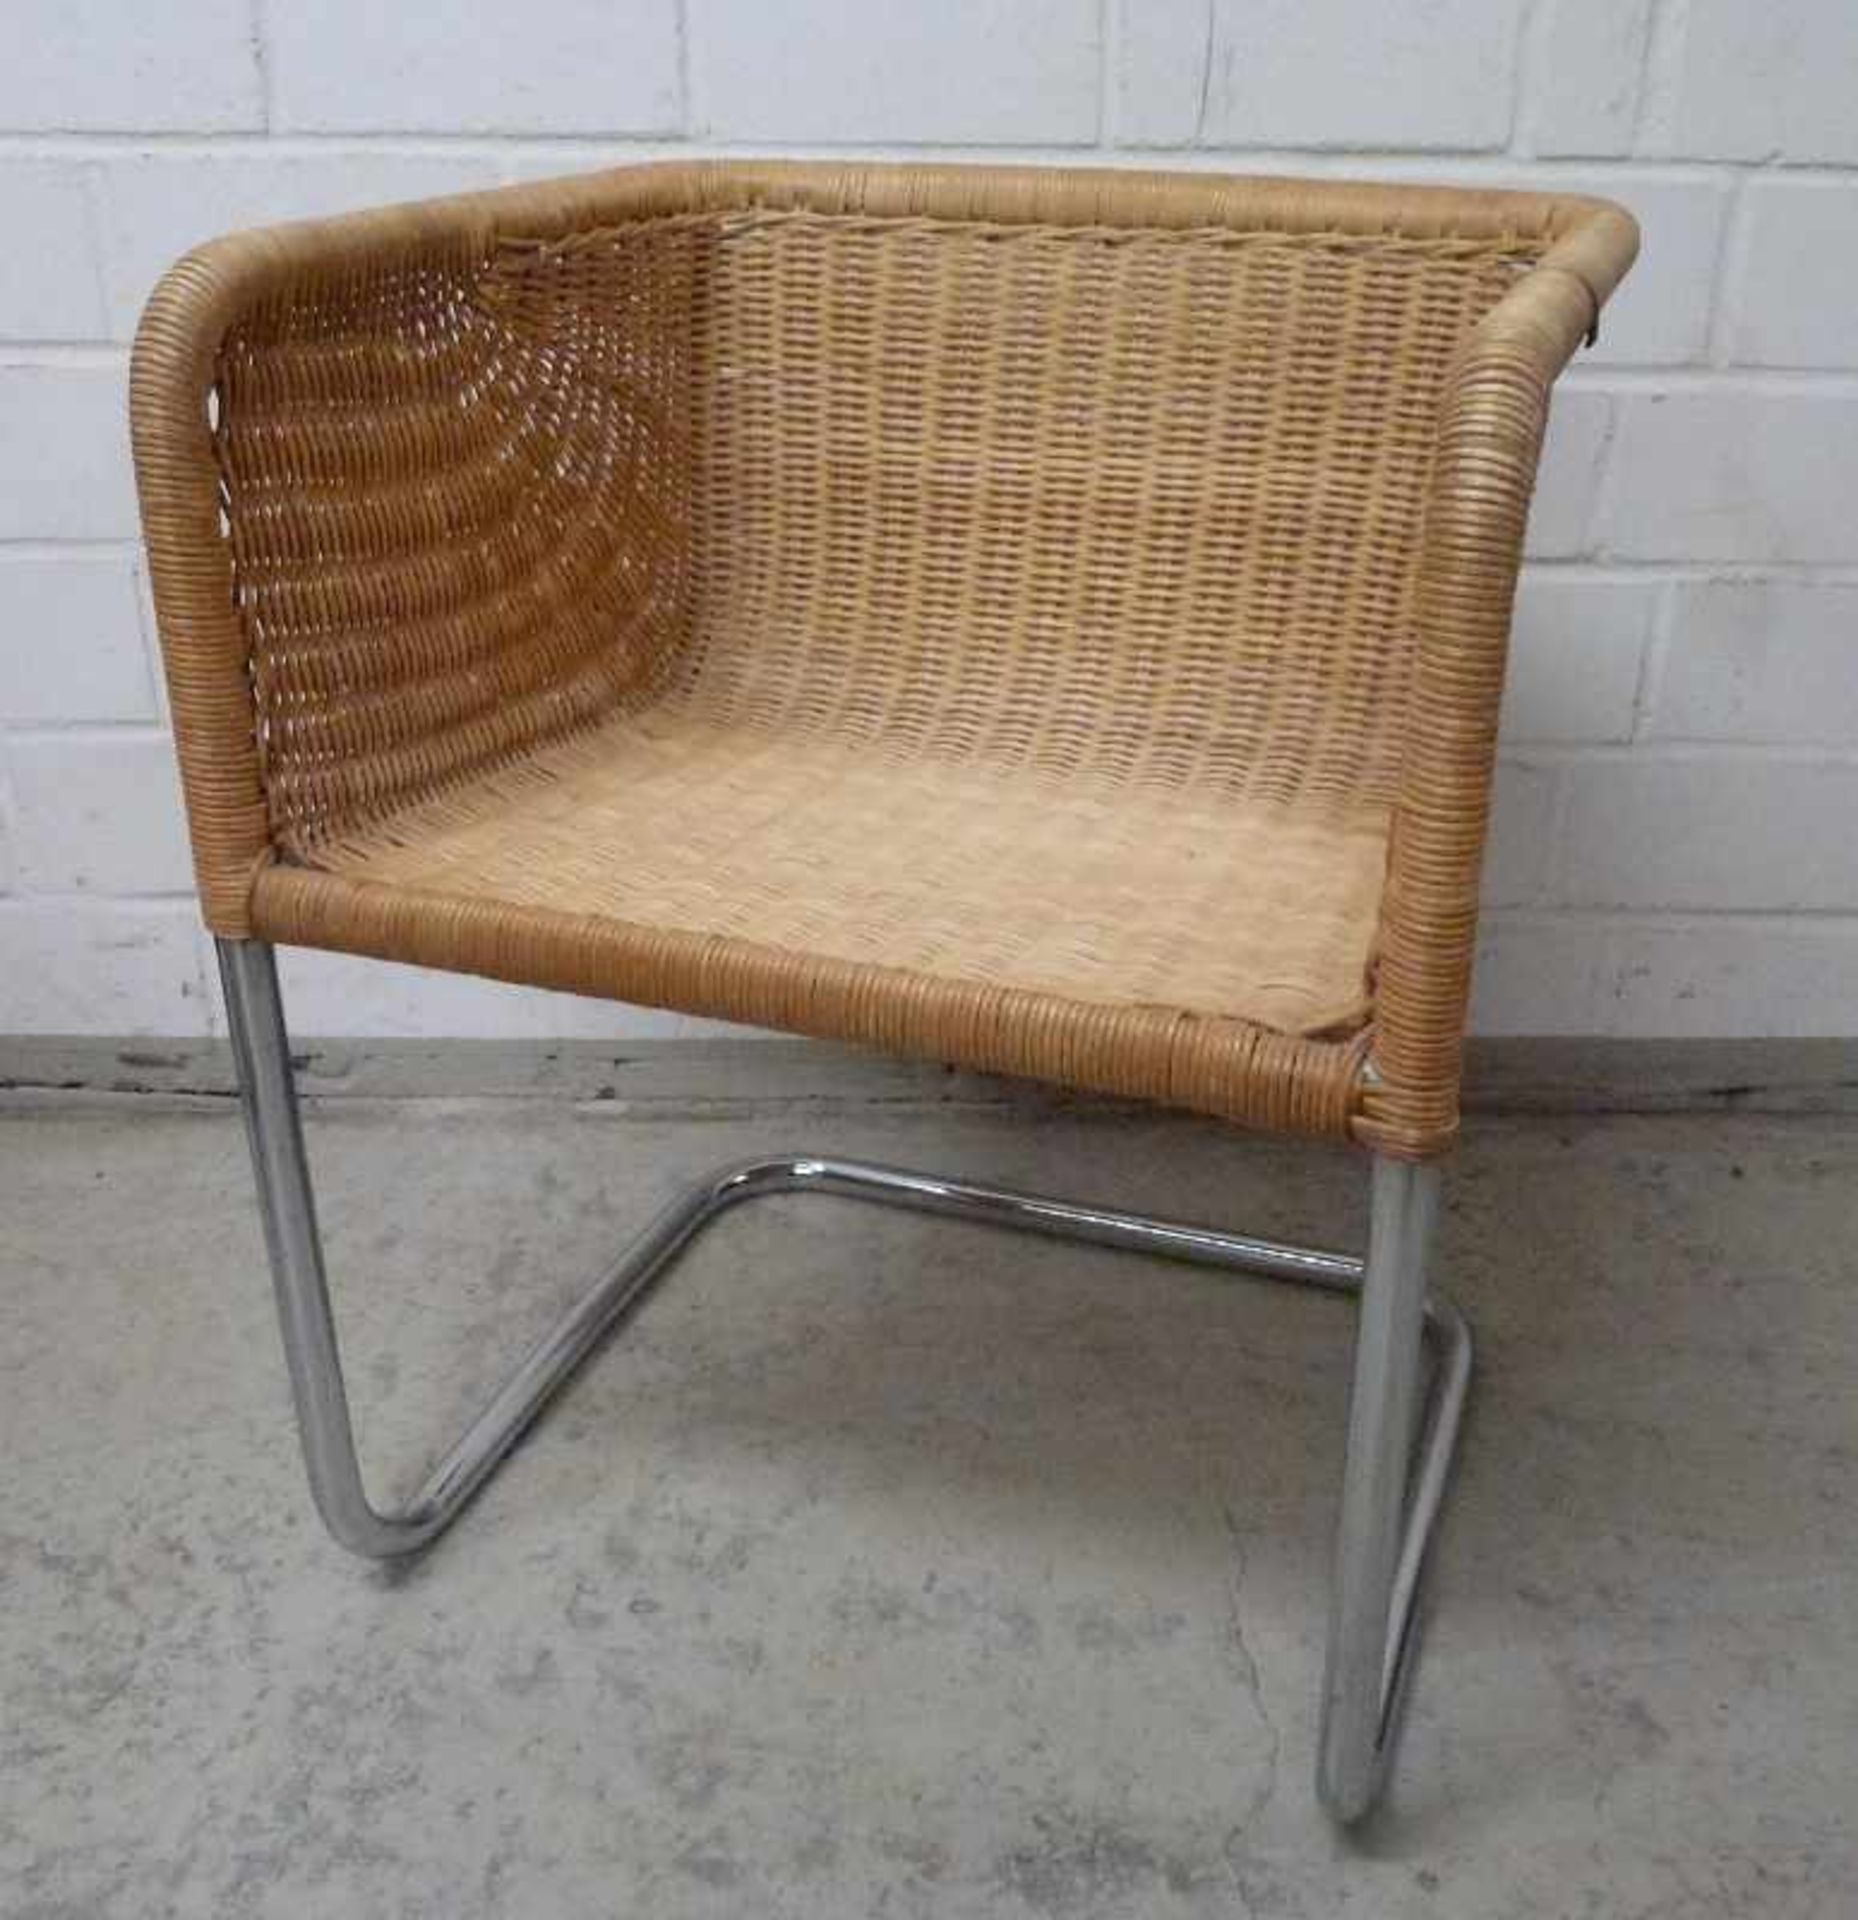 6 Freischwinger Stühle, 1960er Jahre verchromtes Stahlgestell, würfelförmiger Sitz, - Bild 3 aus 3